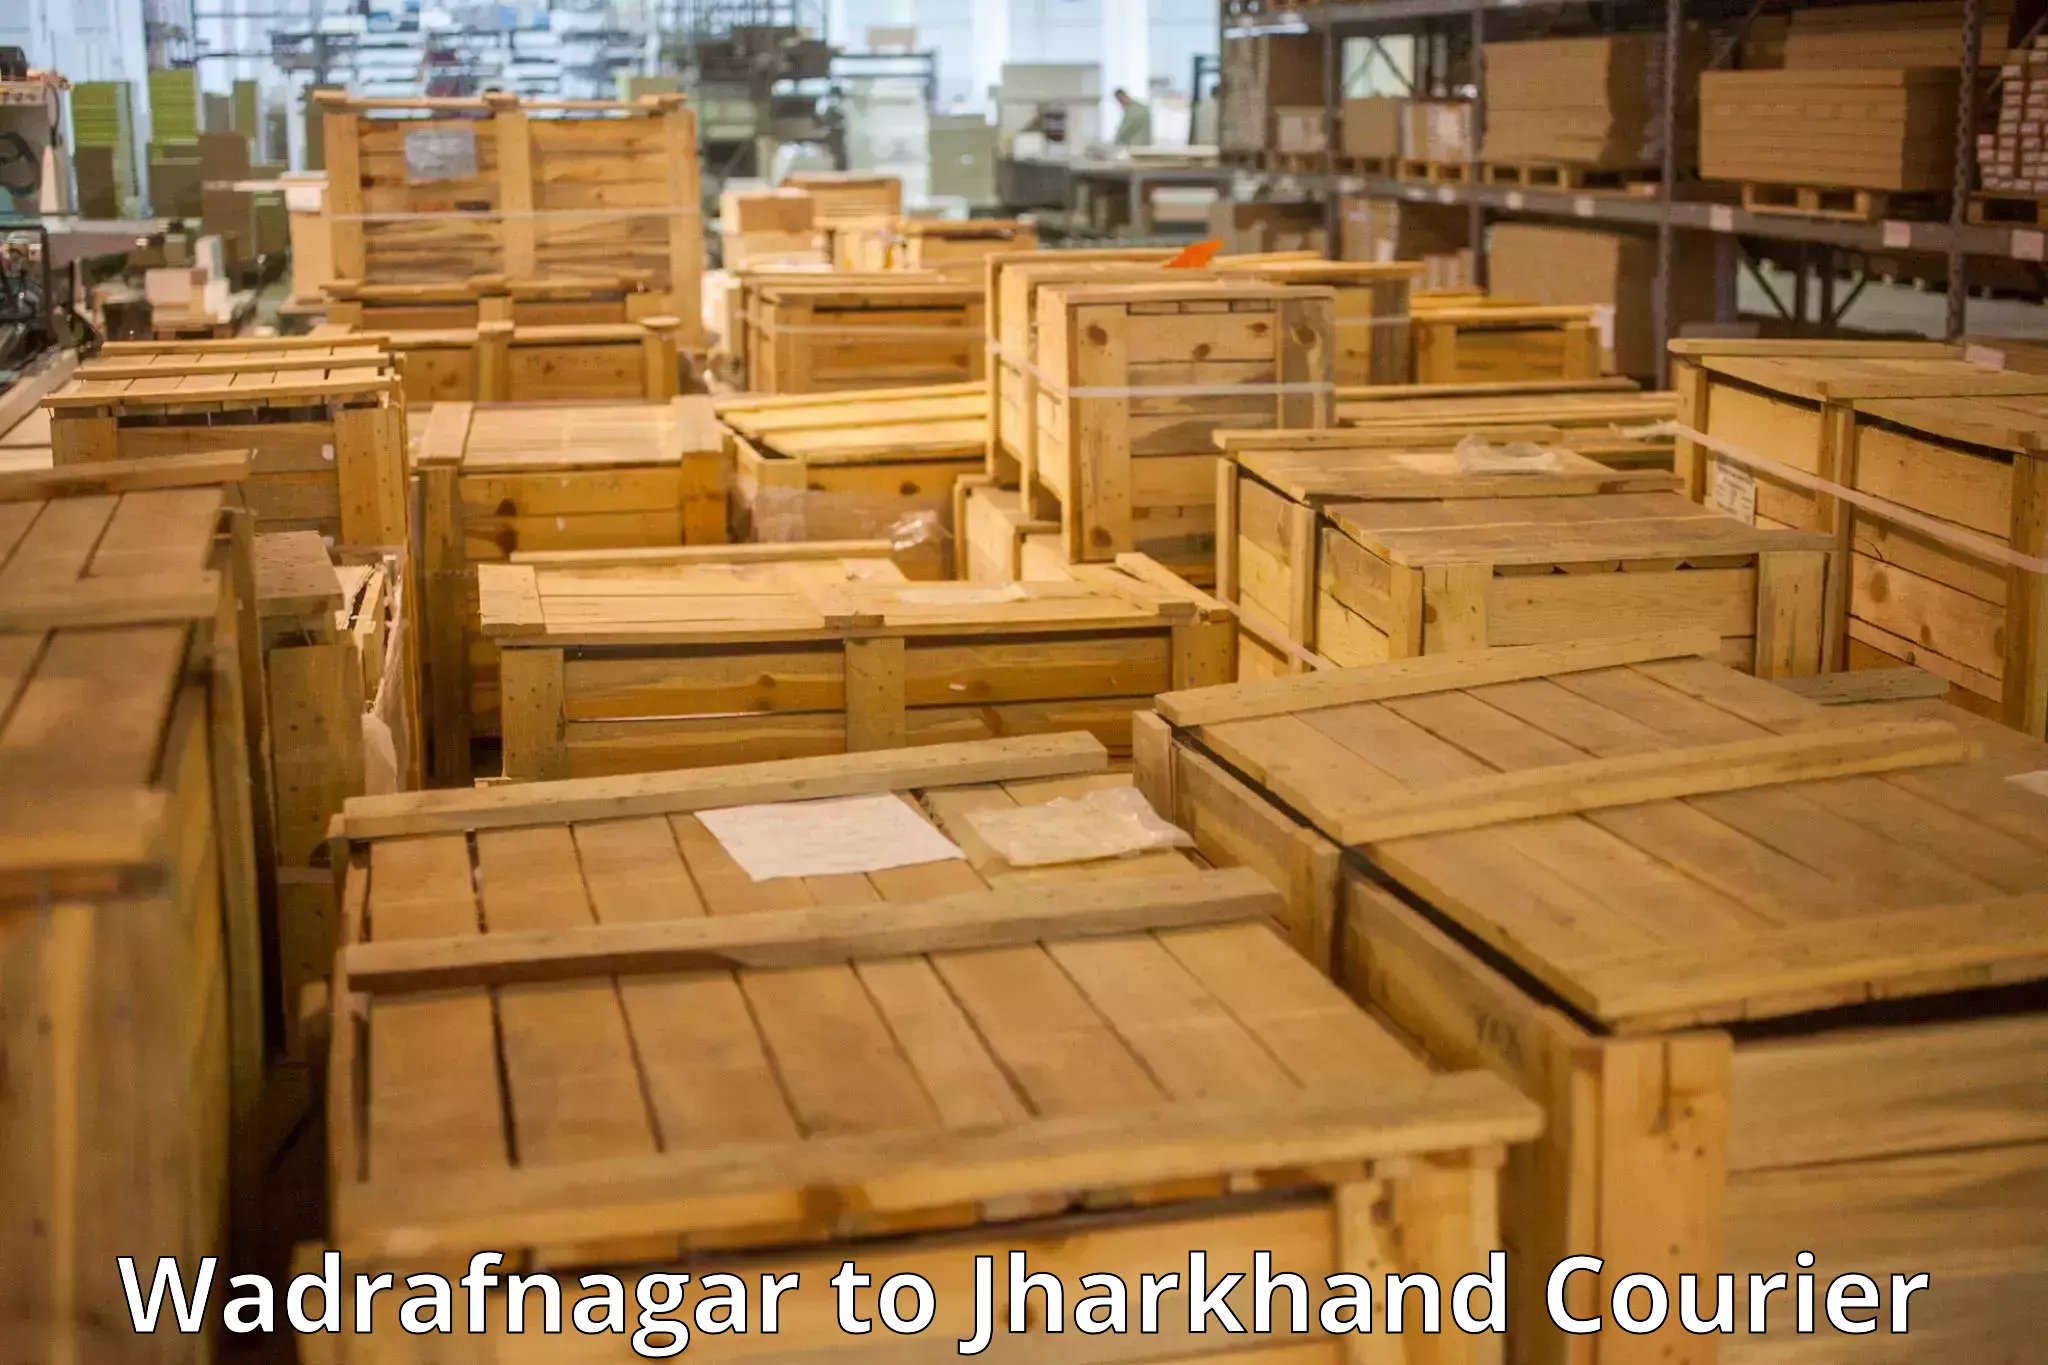 Luggage shipment tracking Wadrafnagar to Bundu